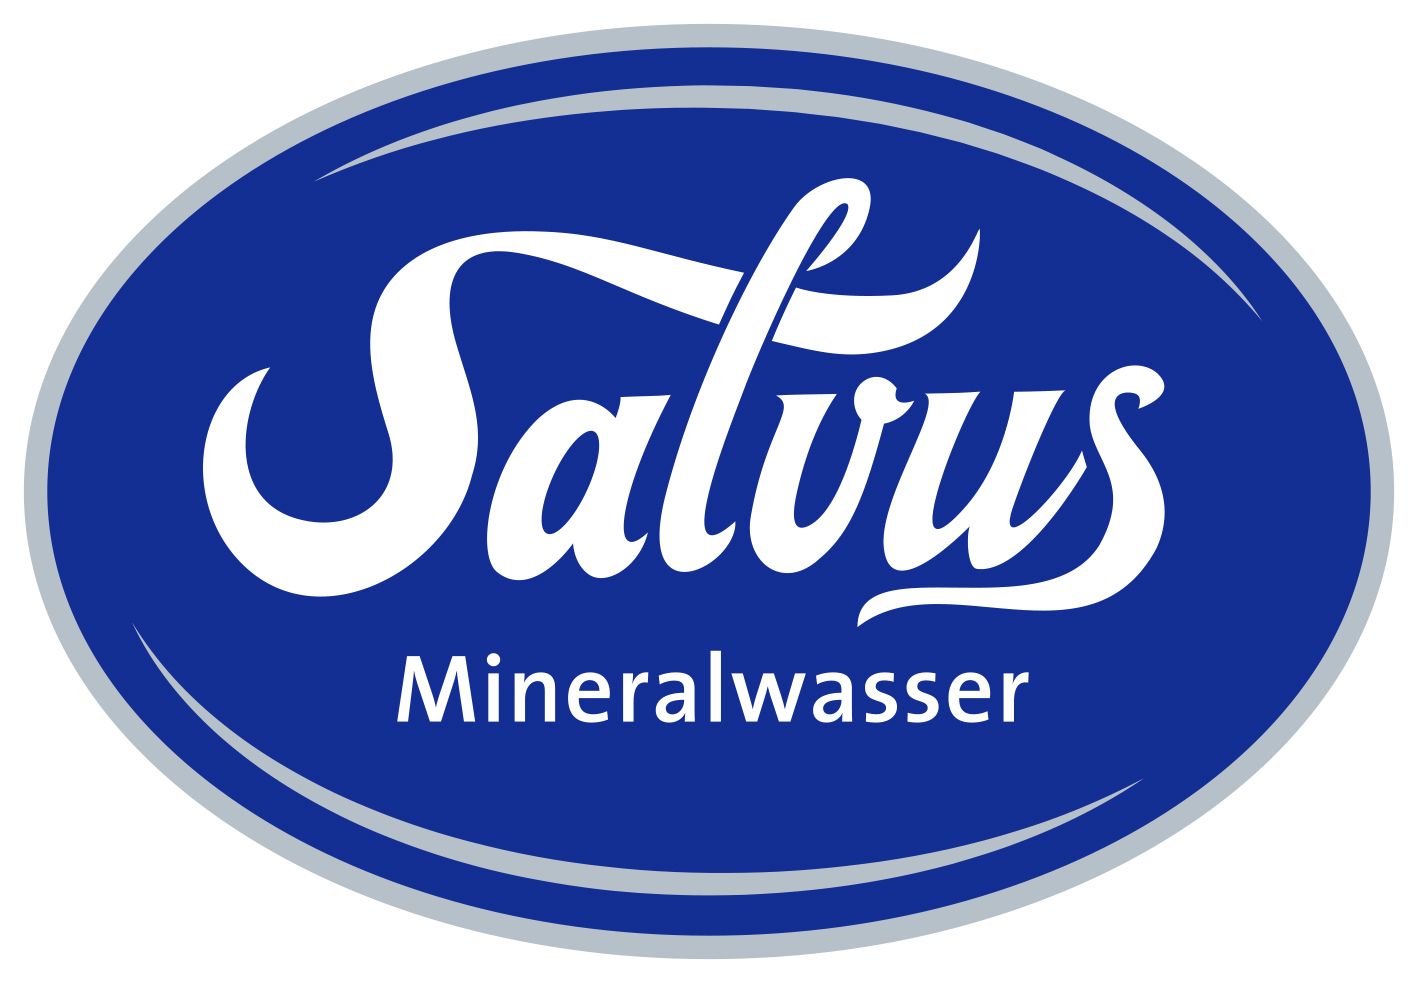 Salvus Mineralwasser